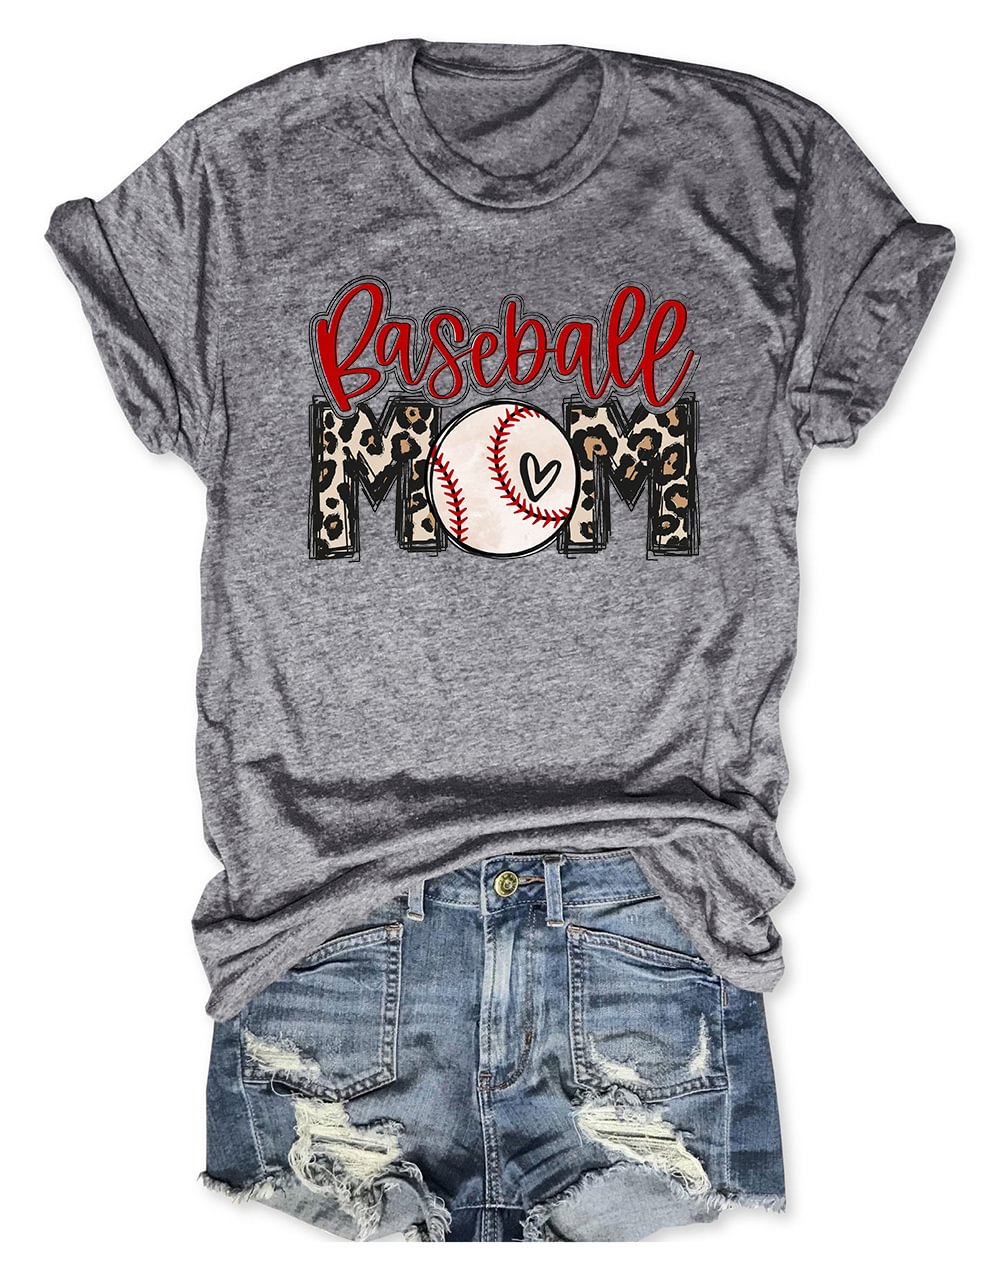 Blessed Mom Baseball T-Shirt